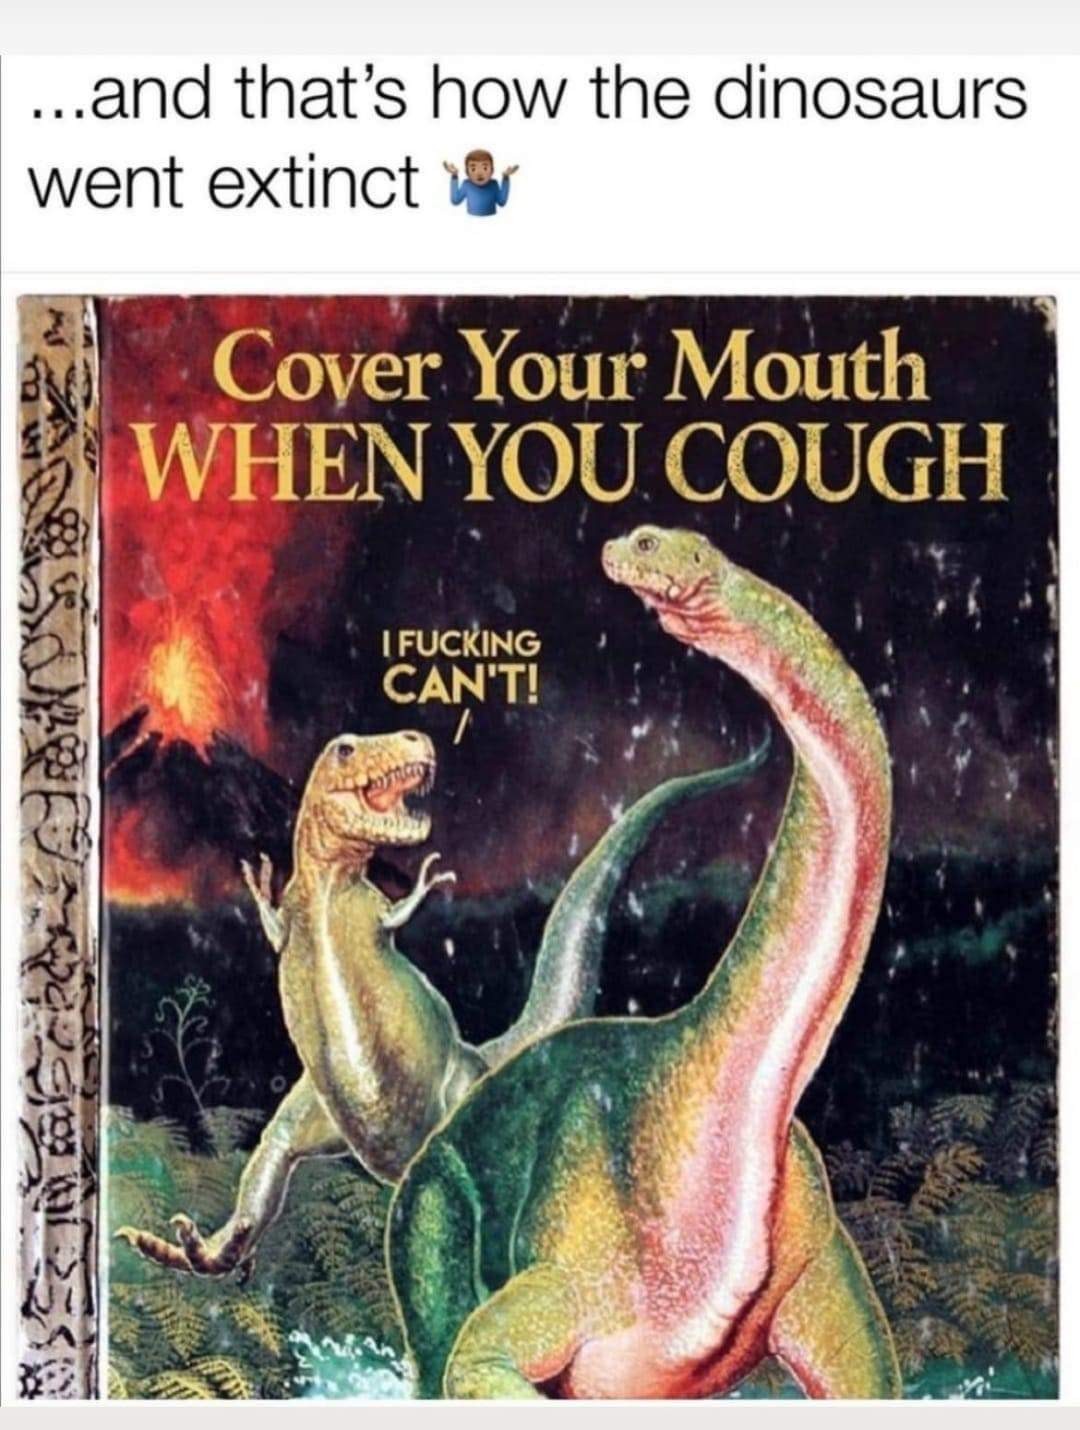 Covidsaurus rex - meme